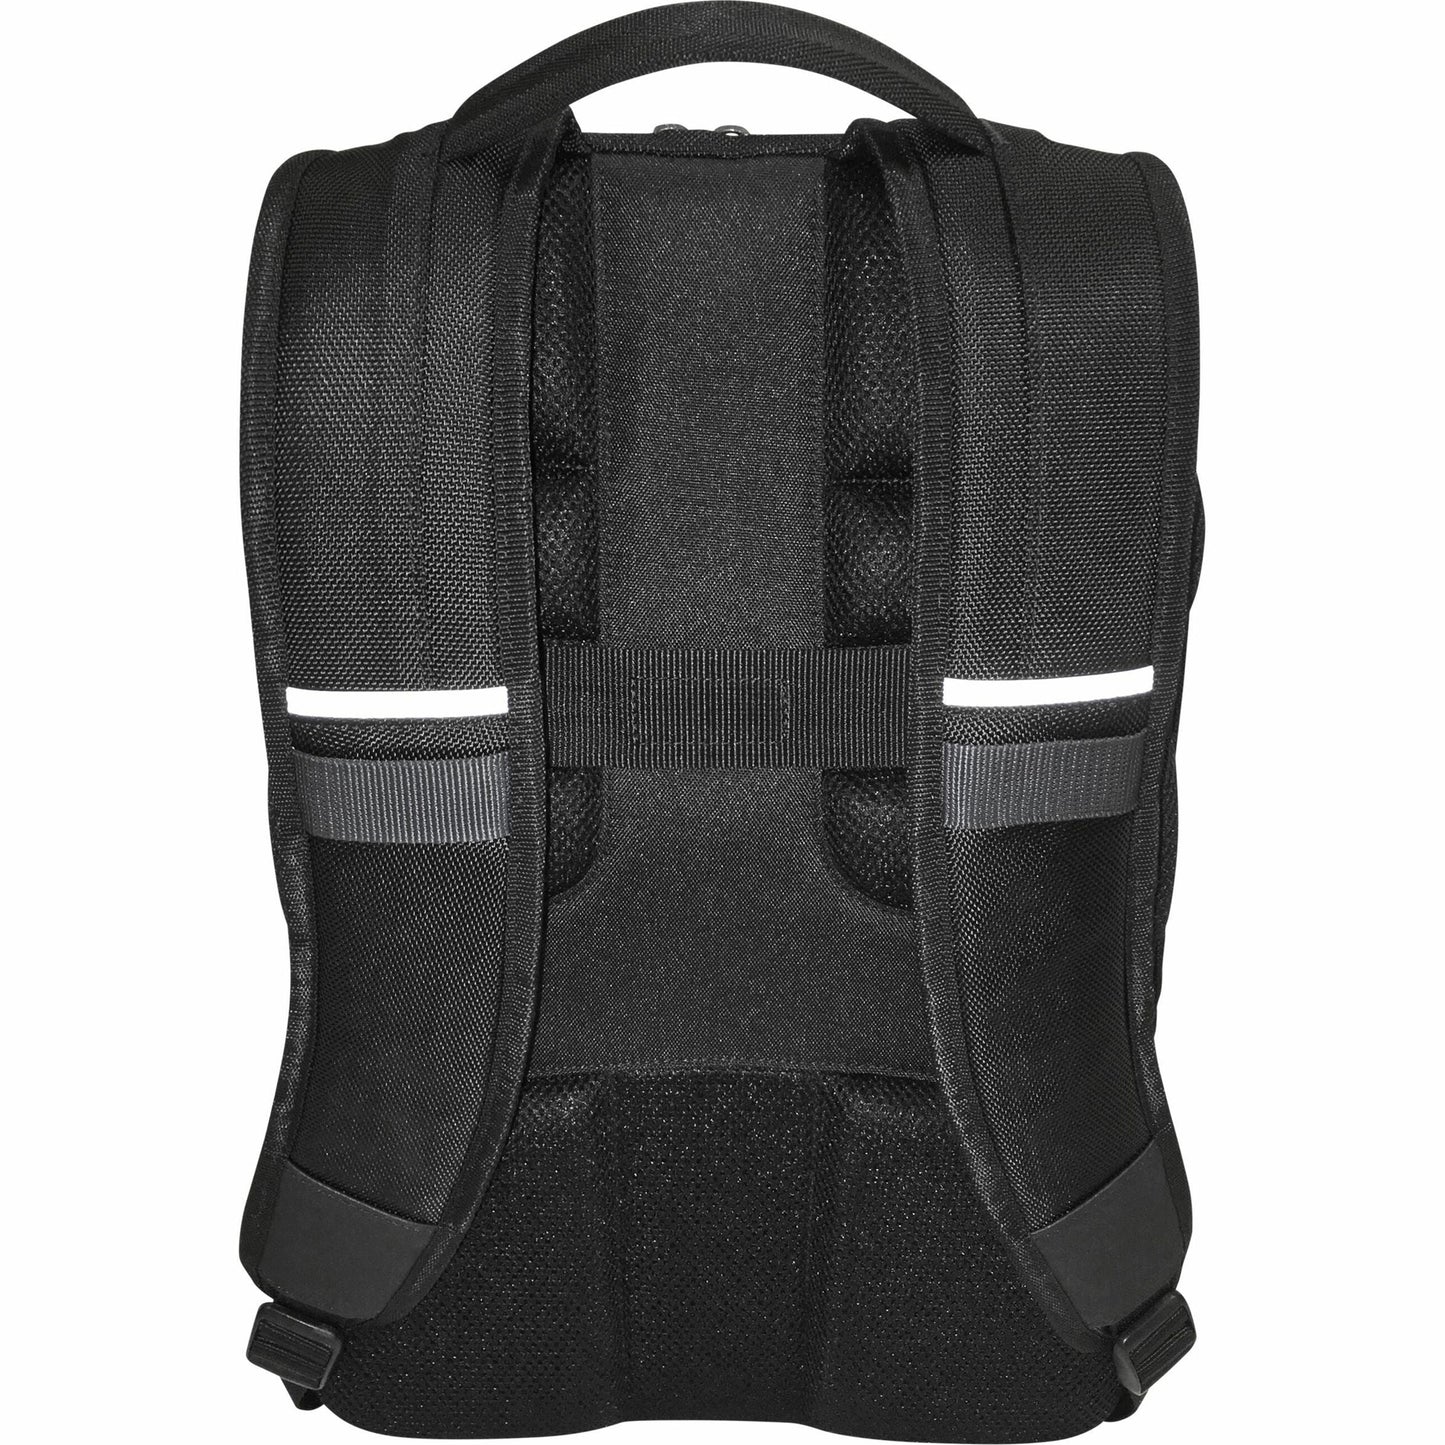 Targus CitySmart TSB895 Carrying Case (Backpack) for 16" Notebook - Gray